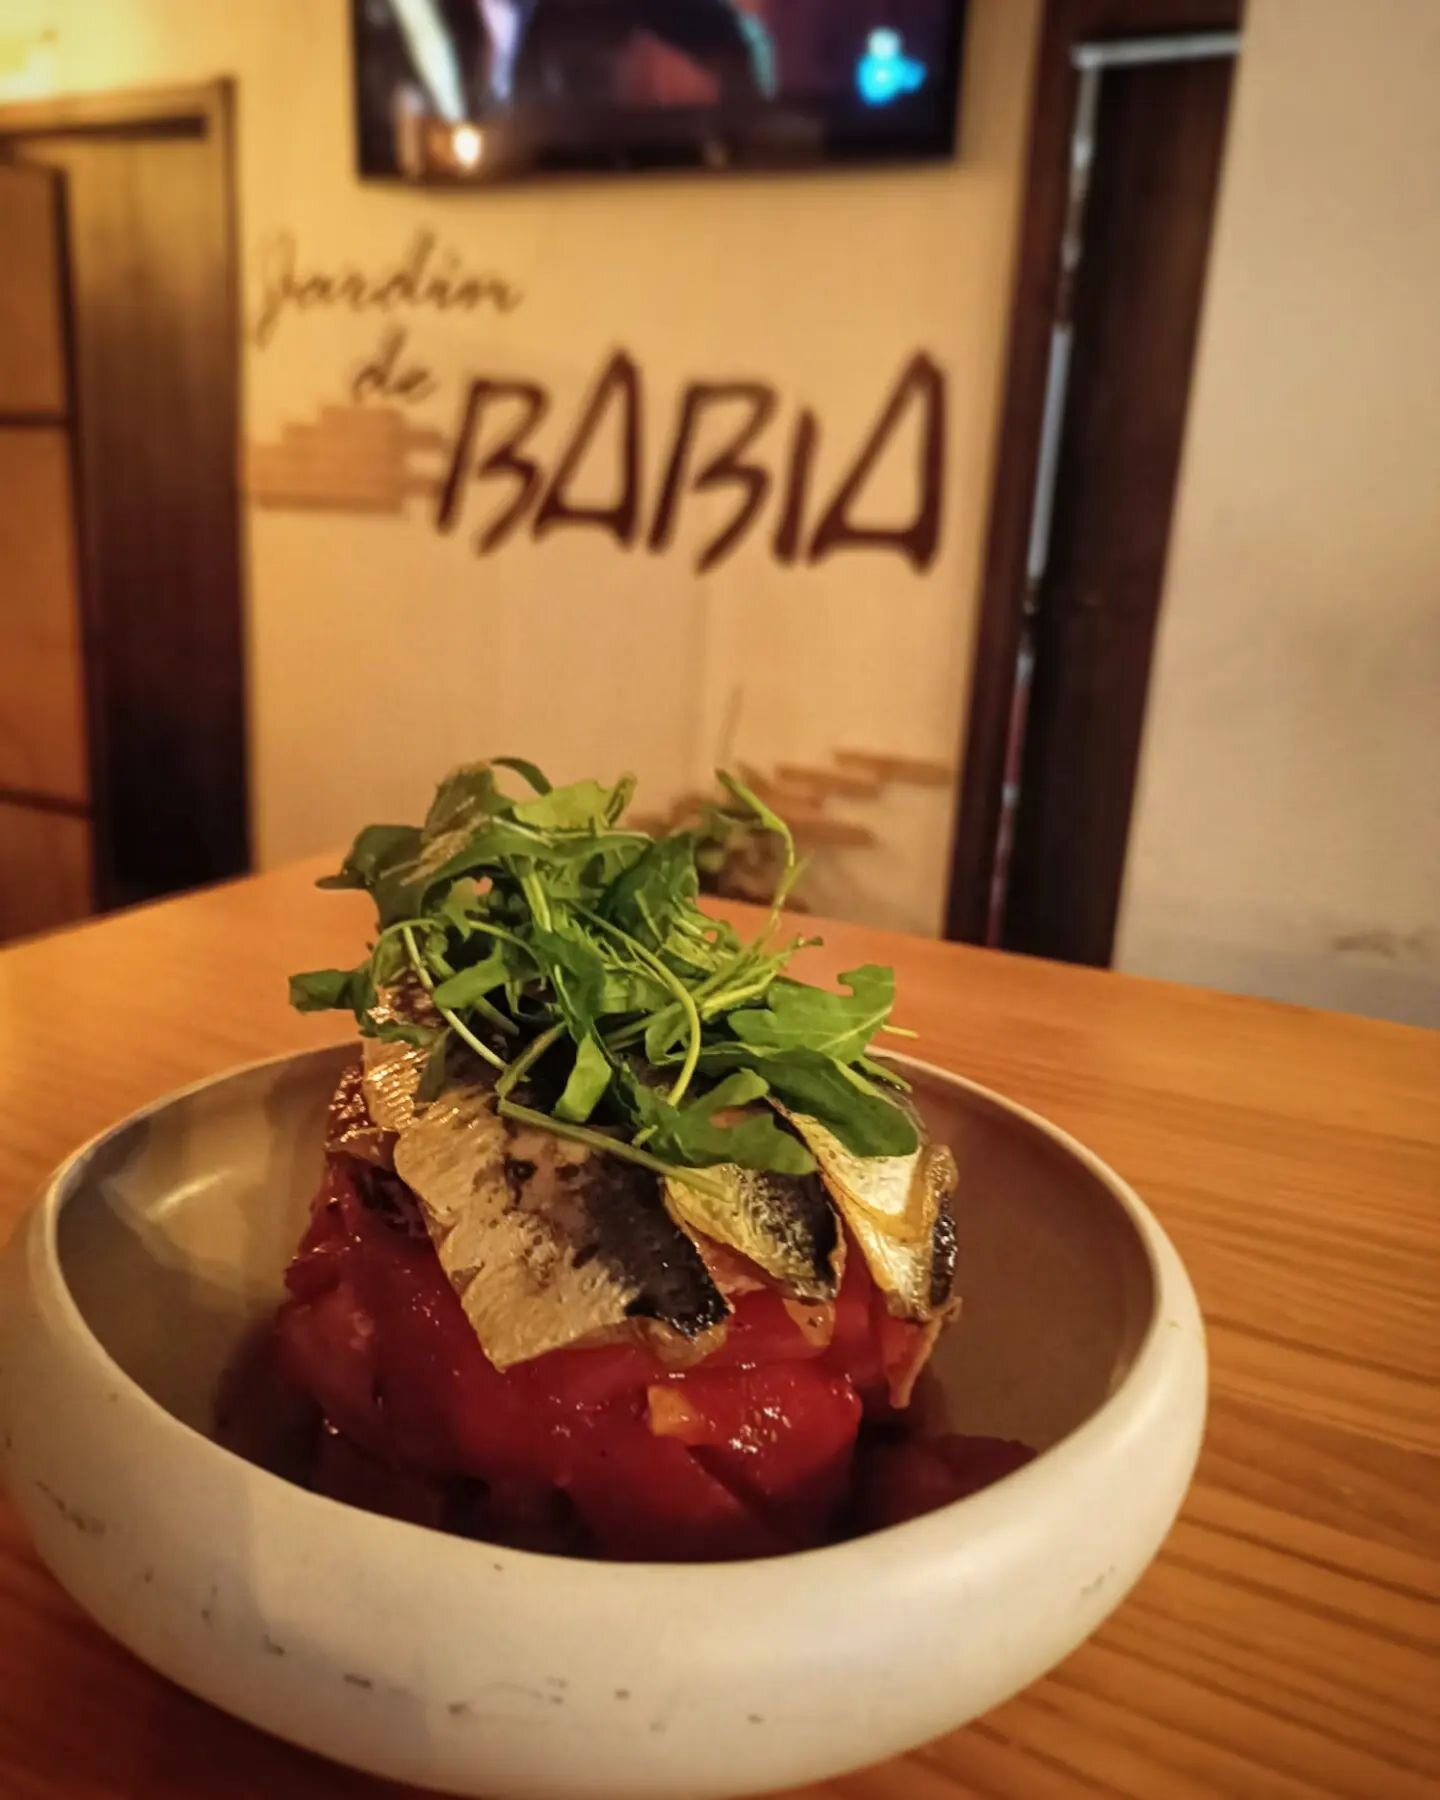 Nuestra ensalada de sardinas en escabeche. S&oacute;lo en #ElJardinDeBabia

#jardindebabia #Talavera #talaveradelareina #food#instagram #restaurante#sardinas#ensalada